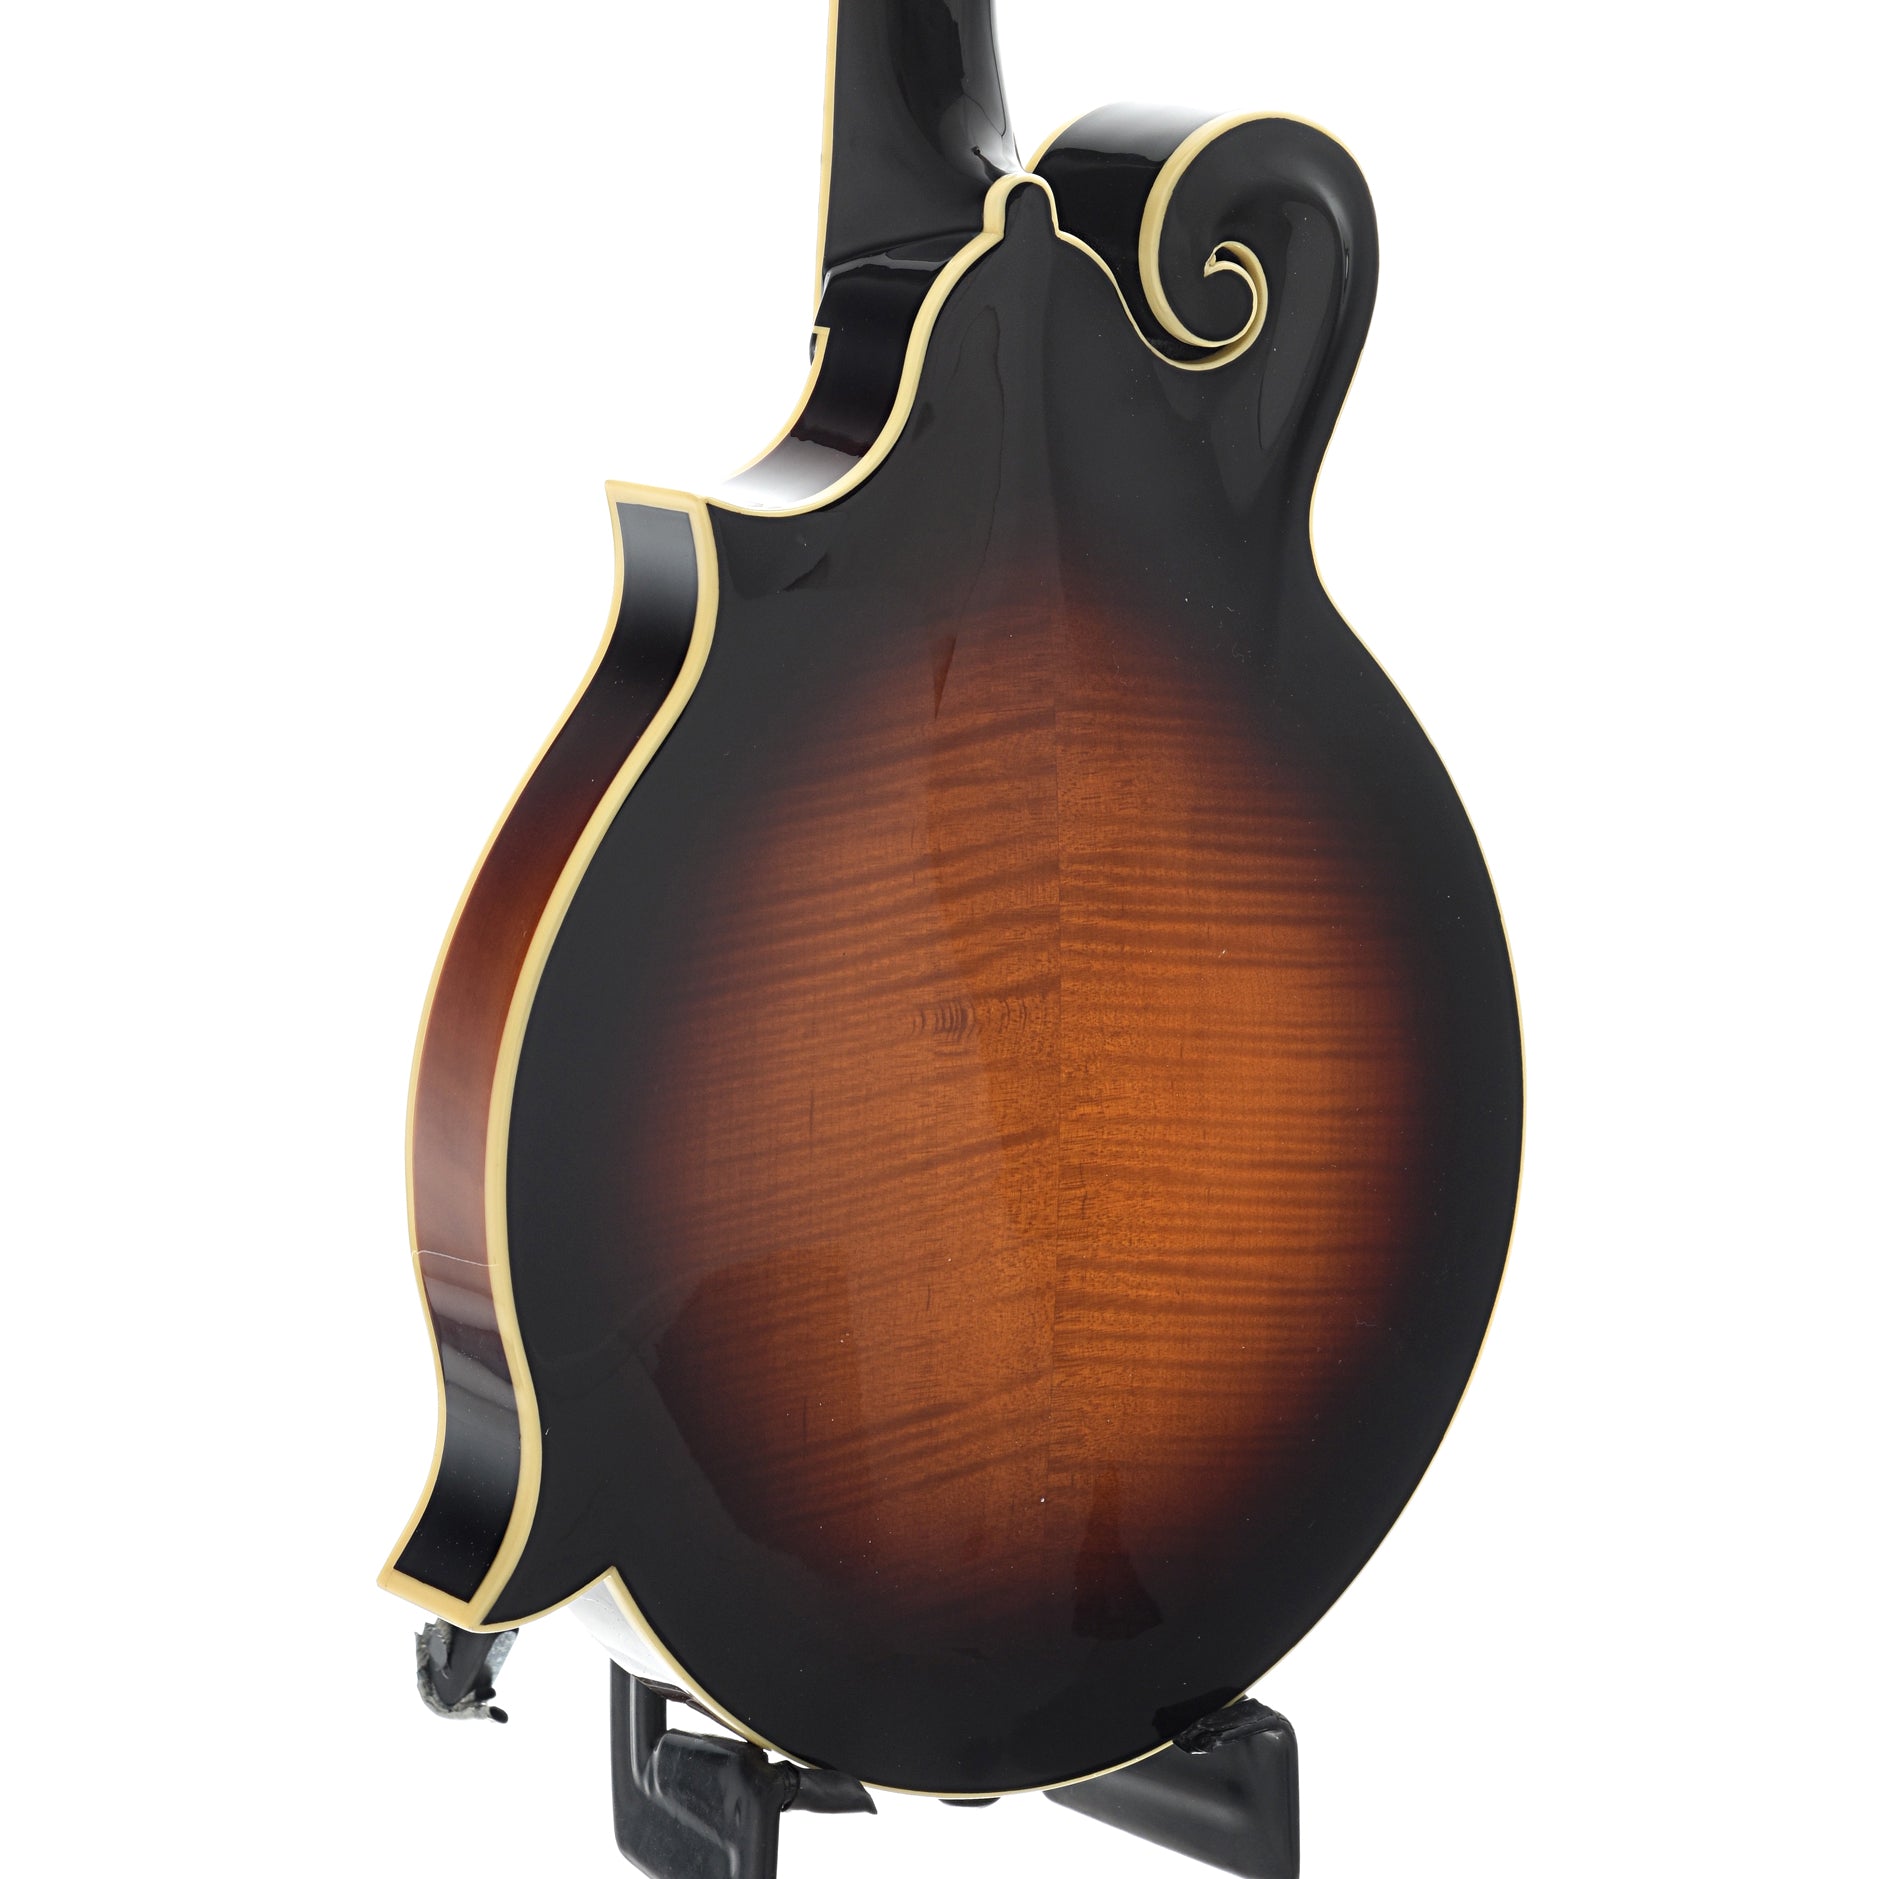 The Loar LM-520-VS Mandolin – Elderly Instruments